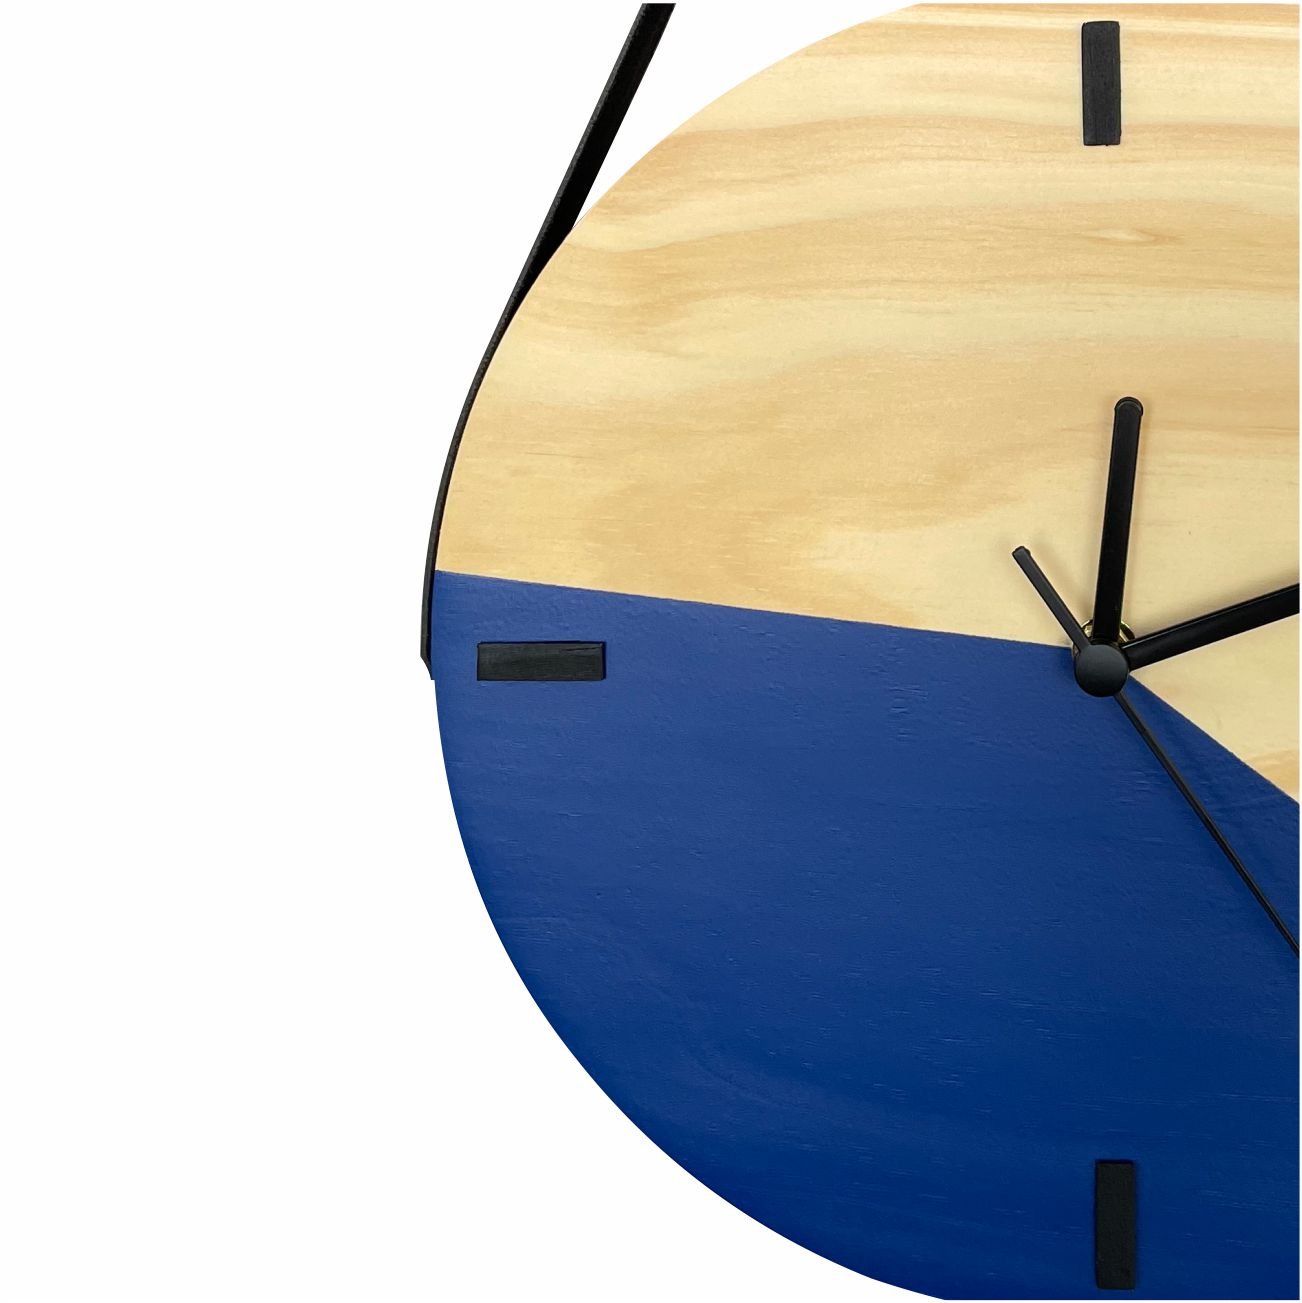 Relógio Decorativo Edward Clock Escandinavo Azul com Alça - 2